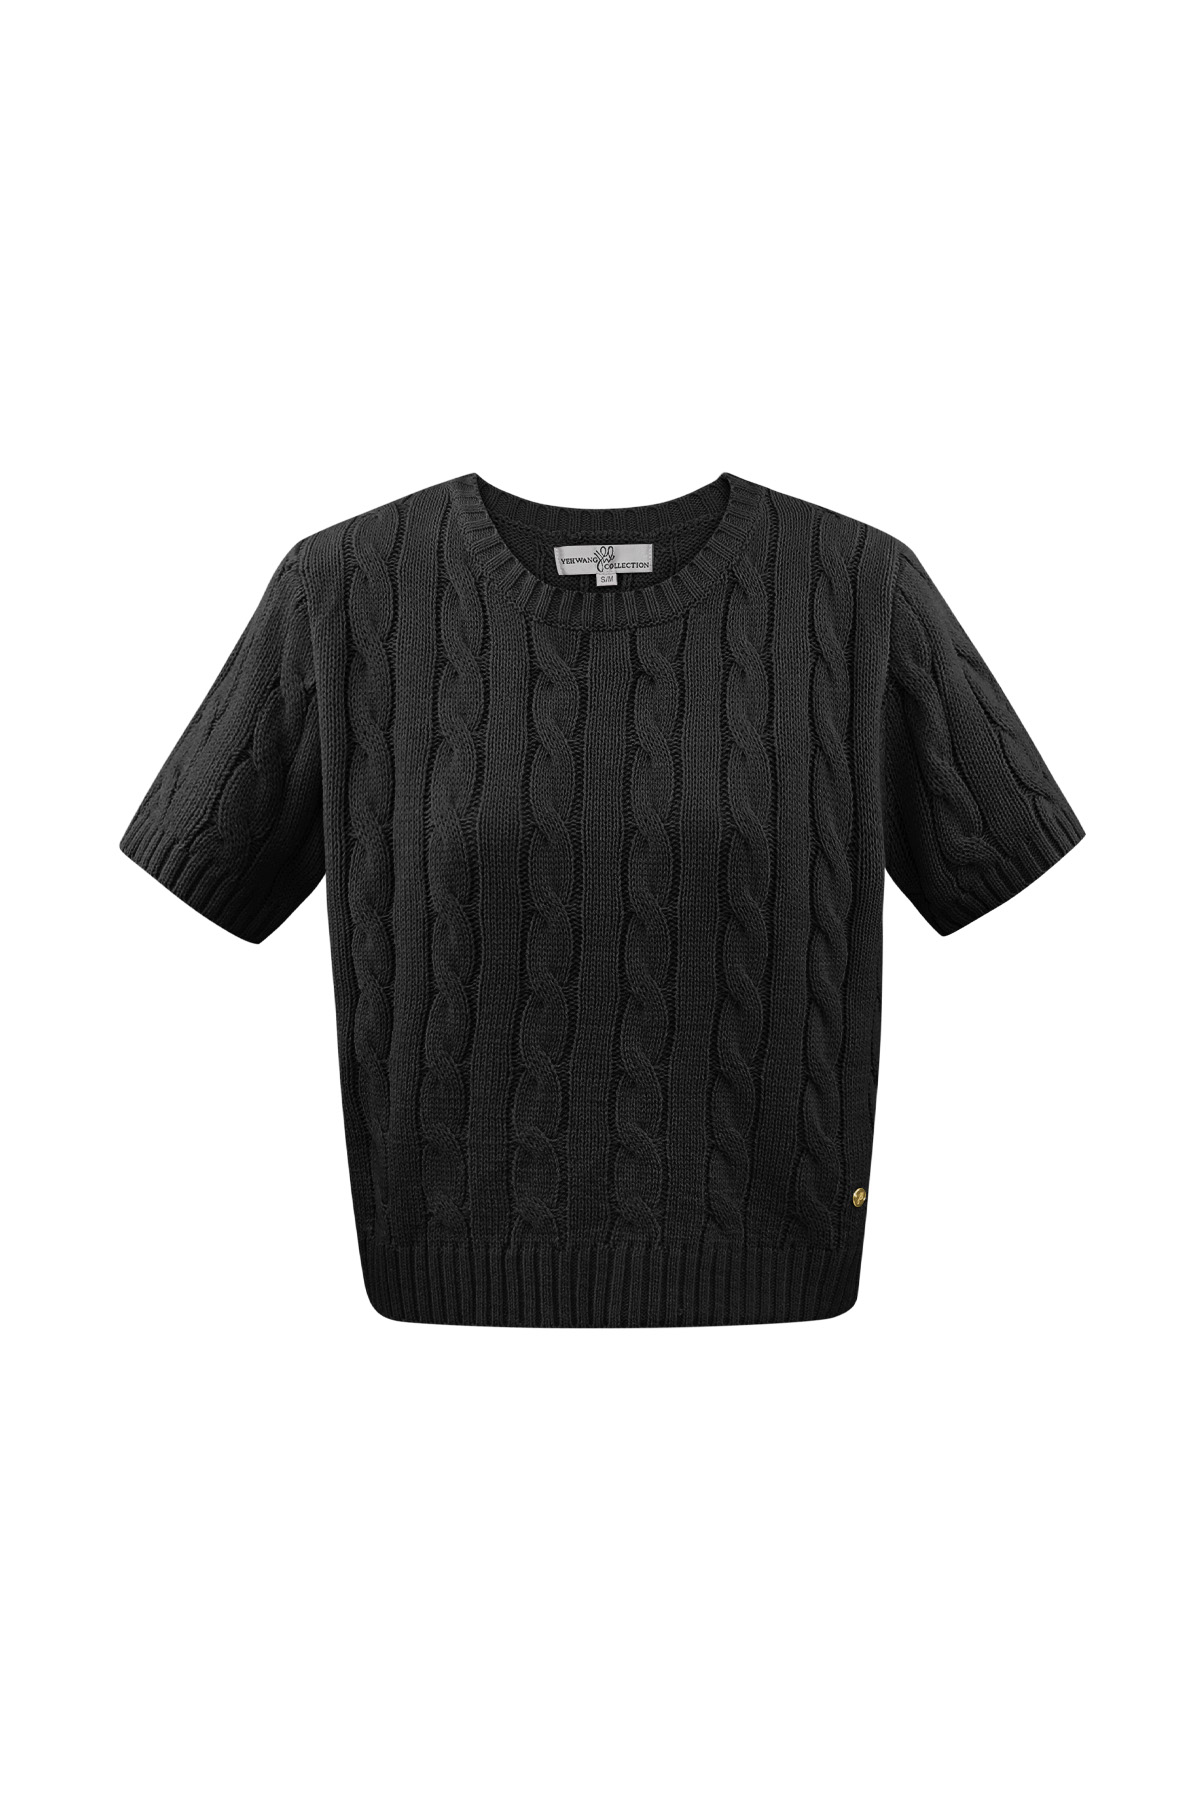 Jersey clásico de punto trenzado con mangas cortas pequeño/mediano – negro 